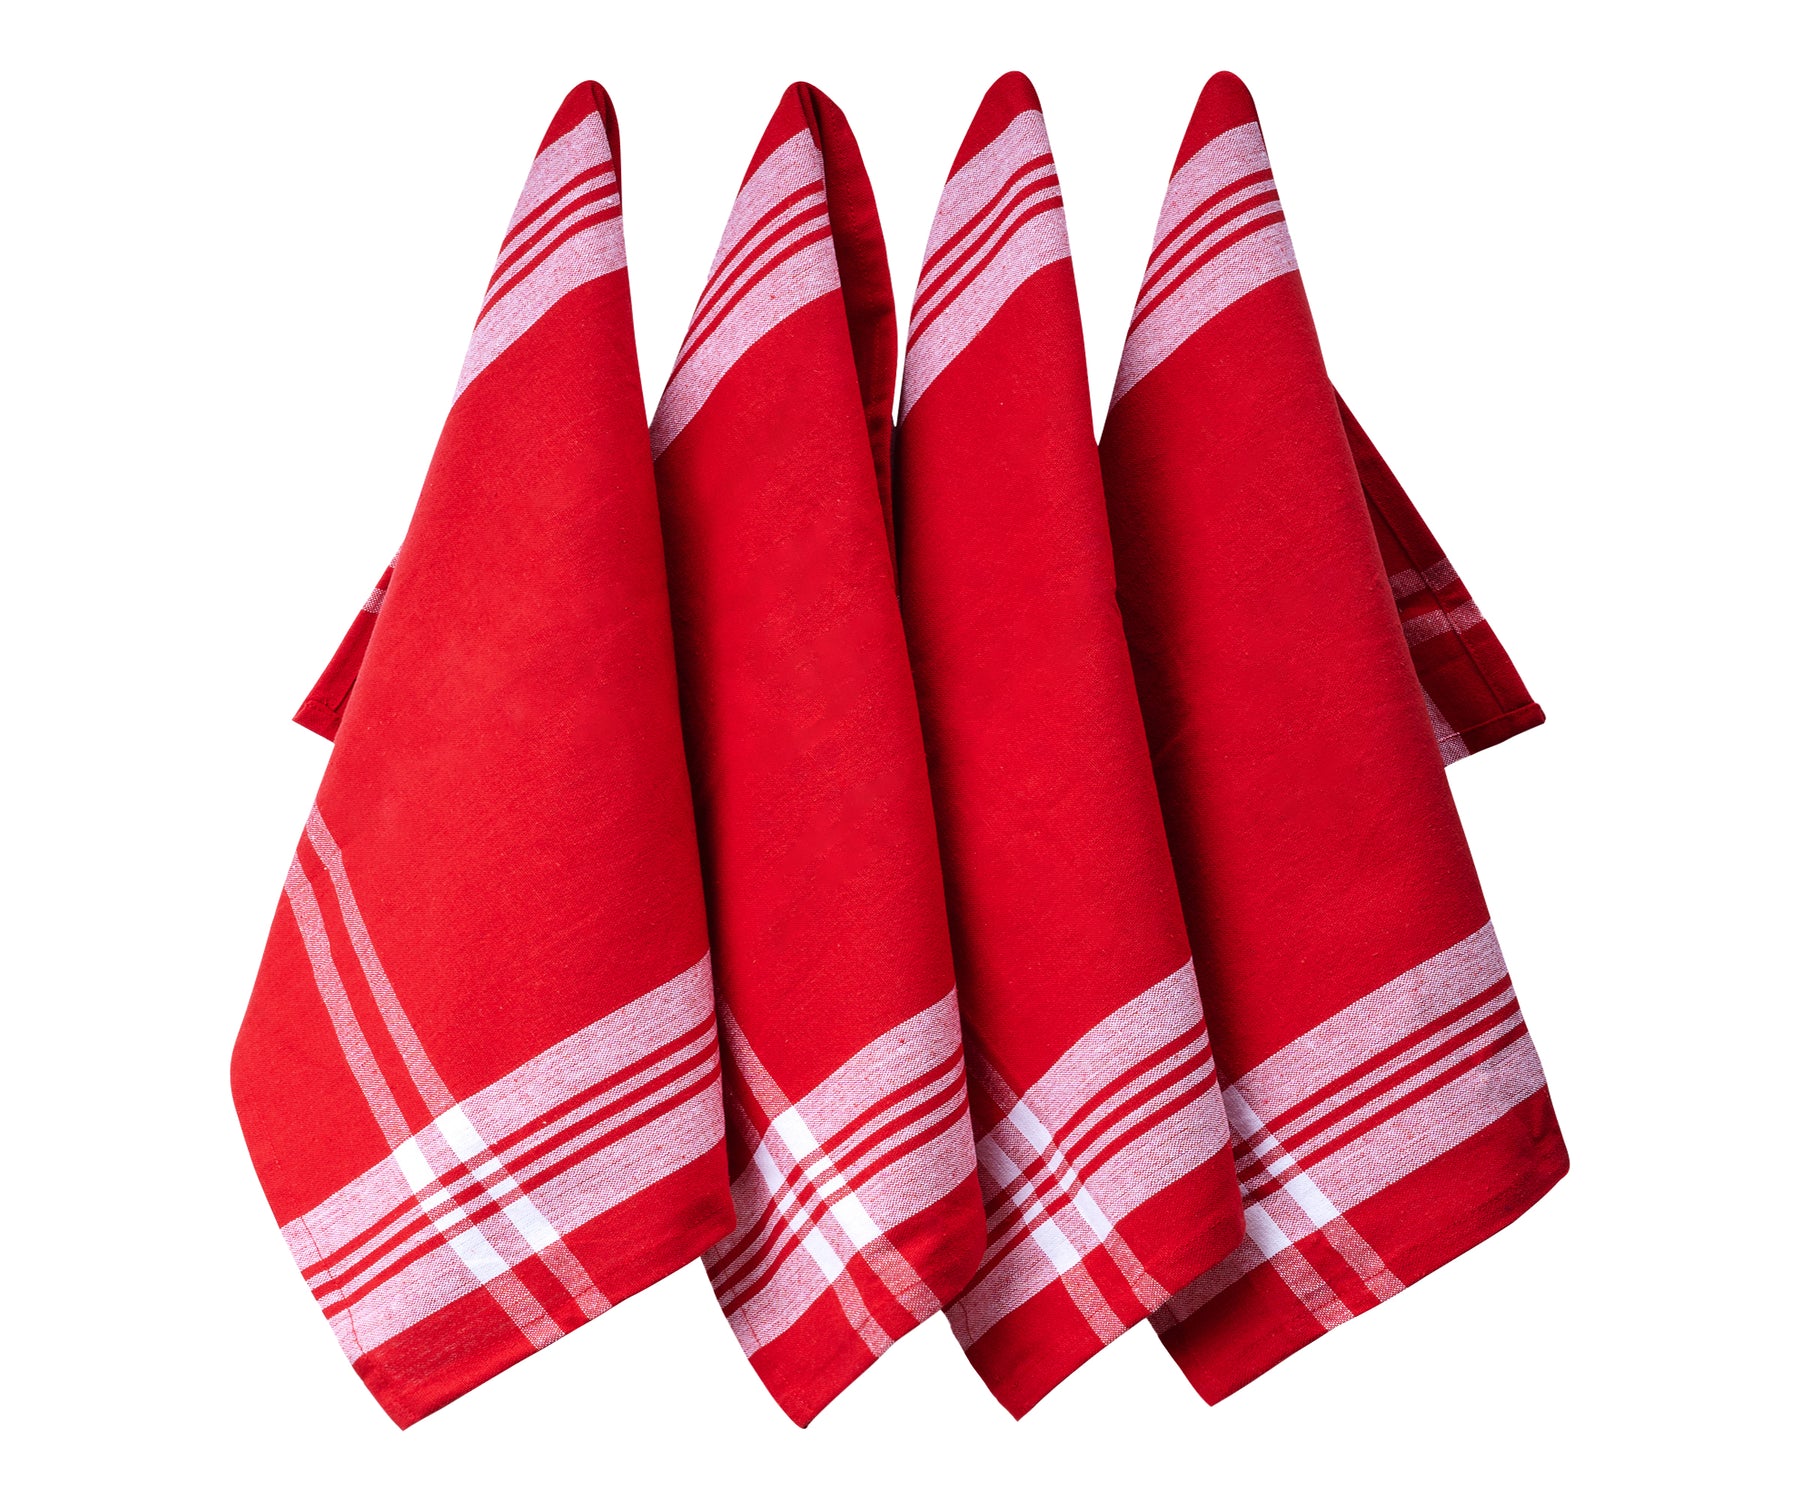 Four vibrant red farmhouse kitchen napkins with white striping